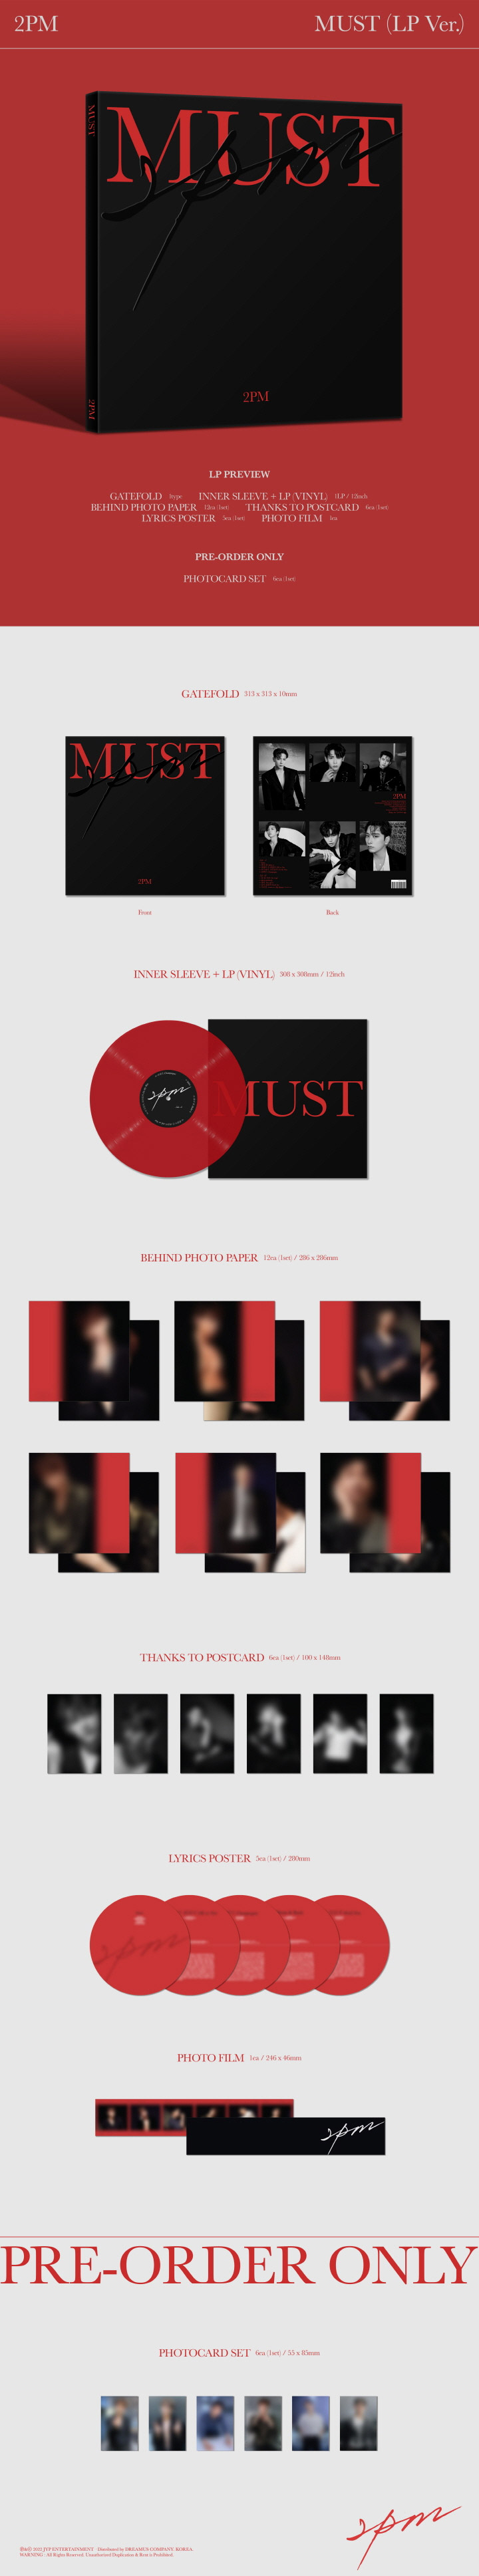 LP] 2PM 7th Album - MUST LP